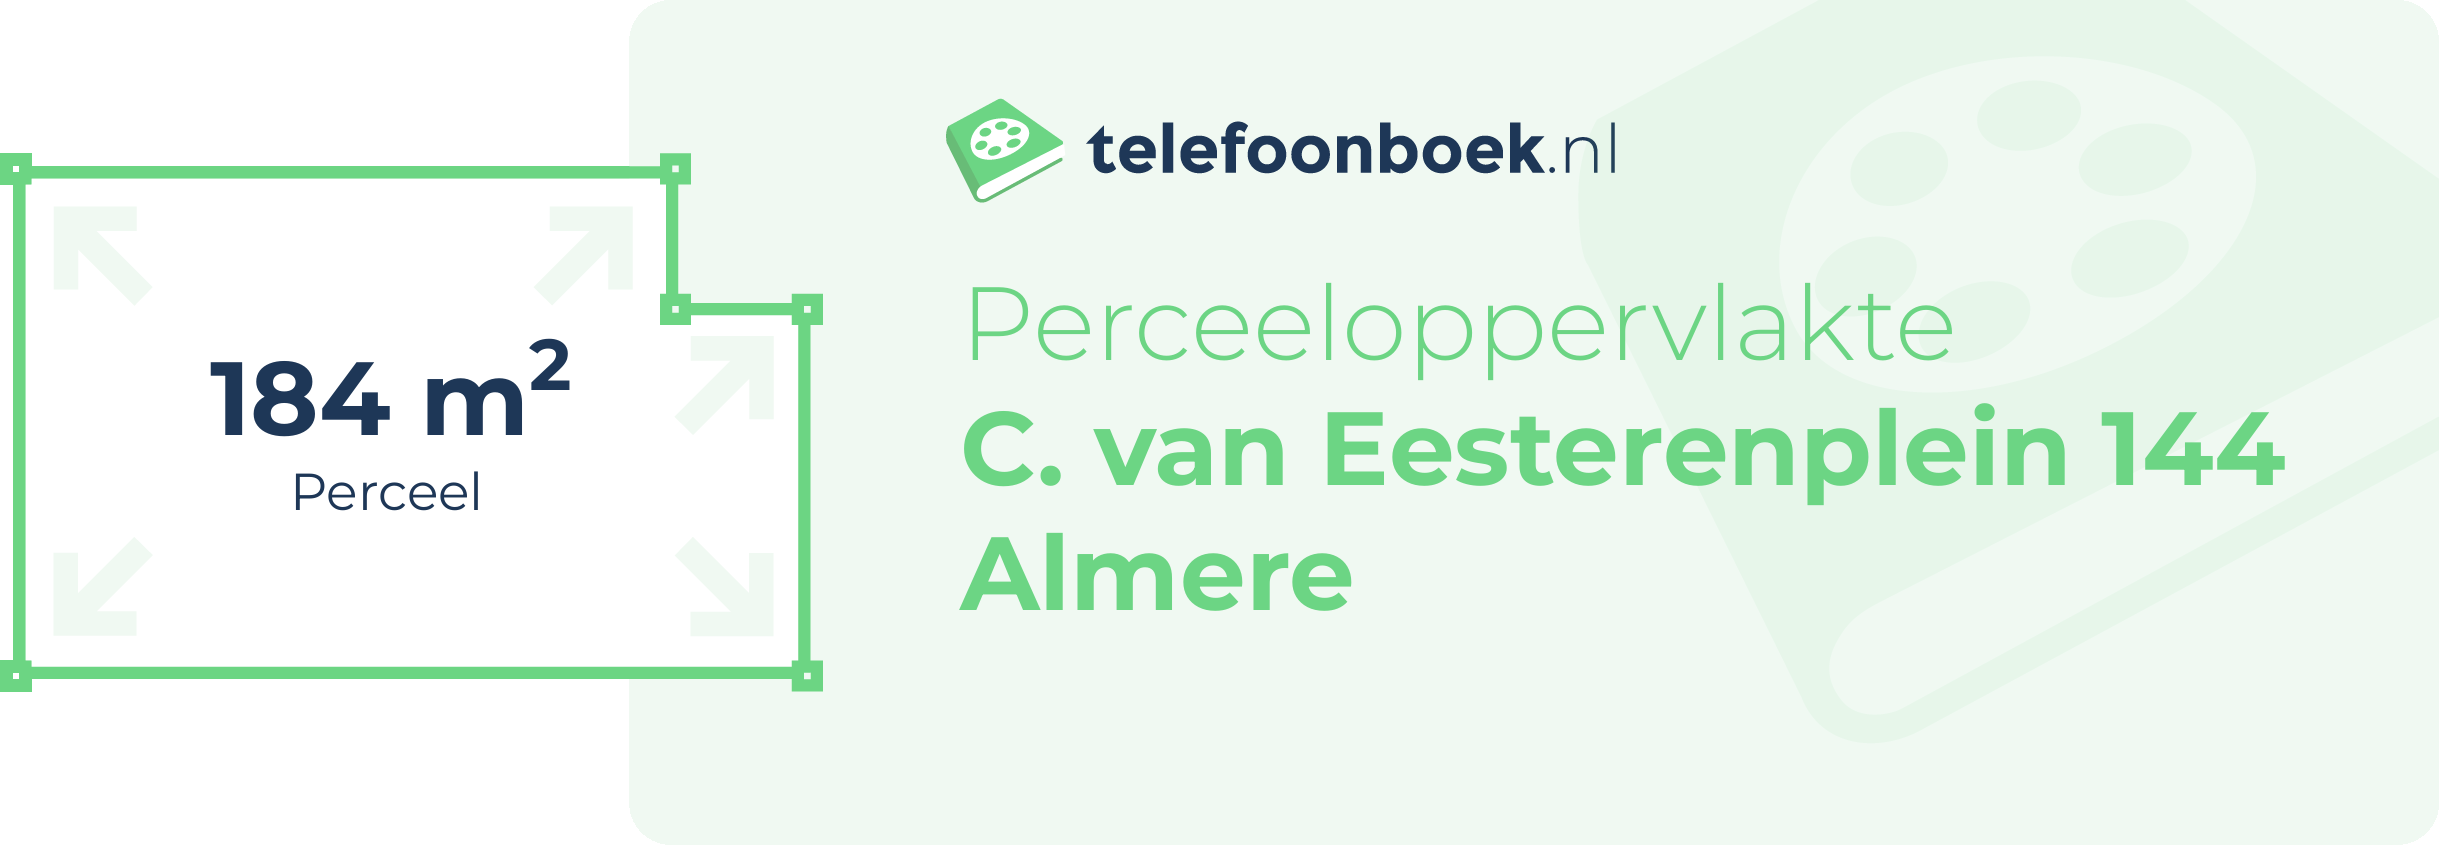 Perceeloppervlakte C. Van Eesterenplein 144 Almere